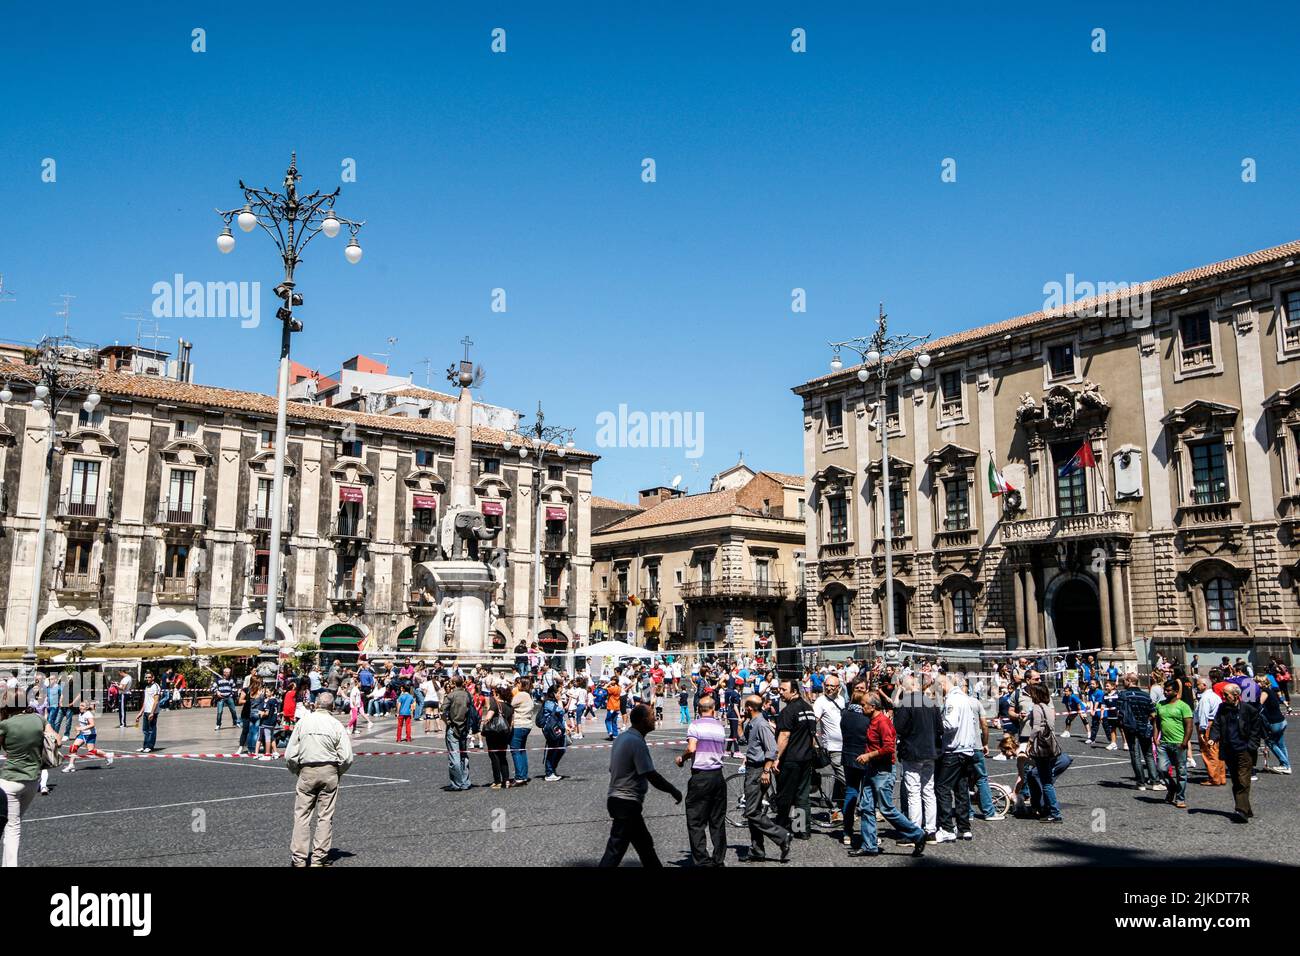 Piazza del Duomo. Cityscape. Metropolitan City of Catania, Sicily, Italy. Stock Photo